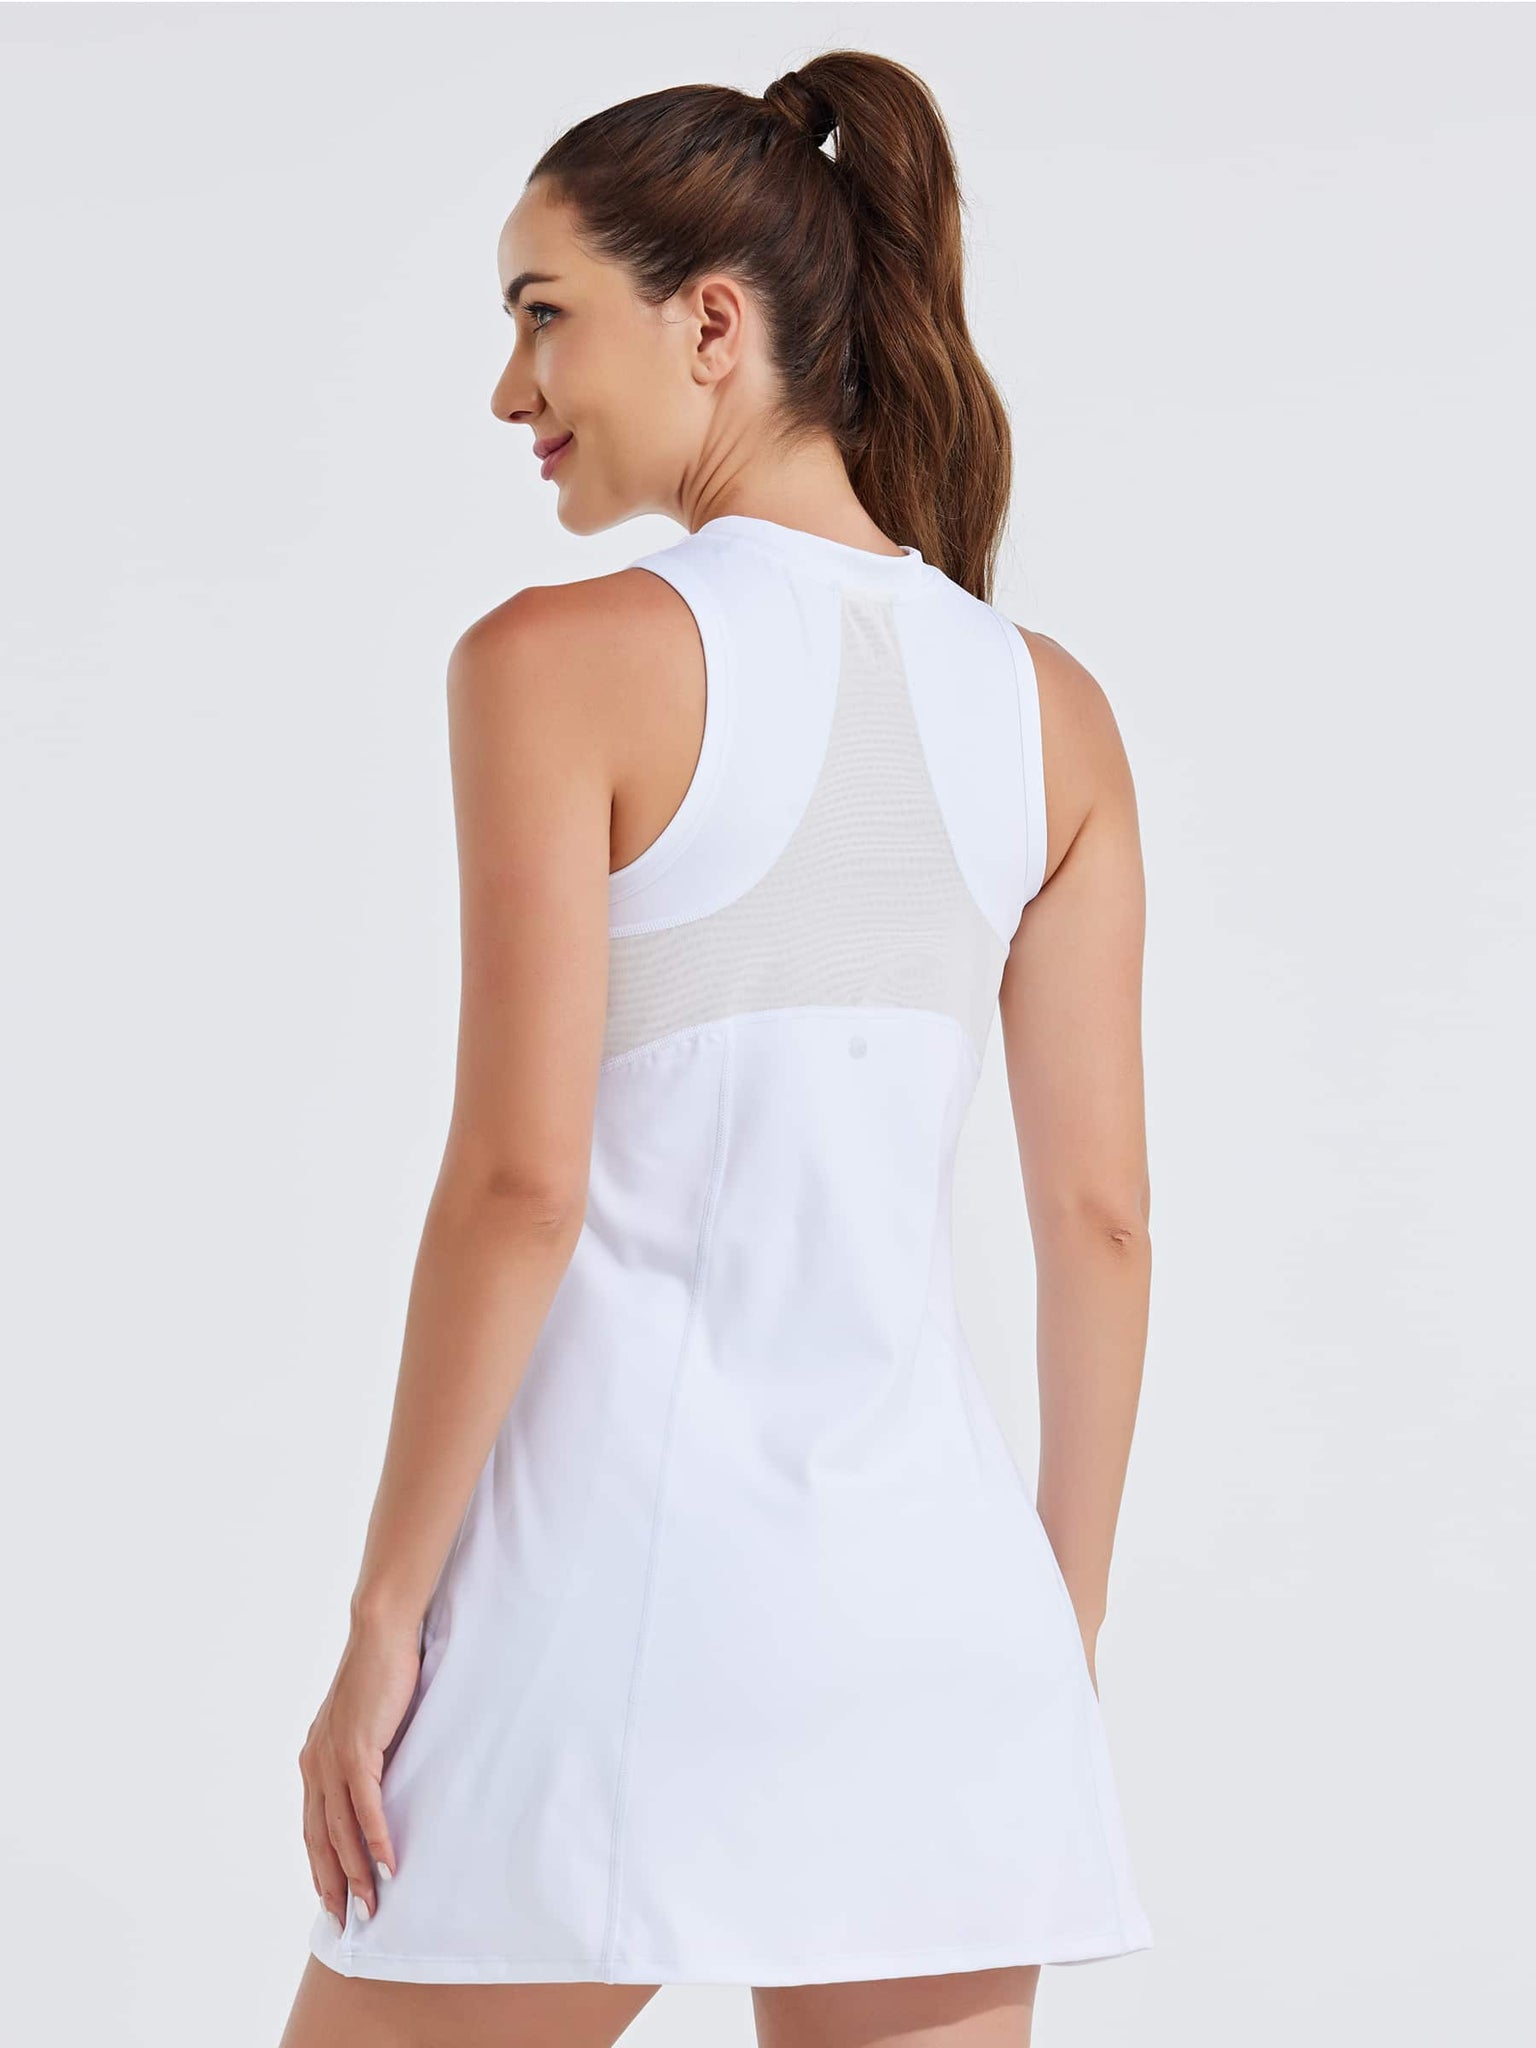 Women's Tennis Golf Dress Sleeveless Built-in Shorts